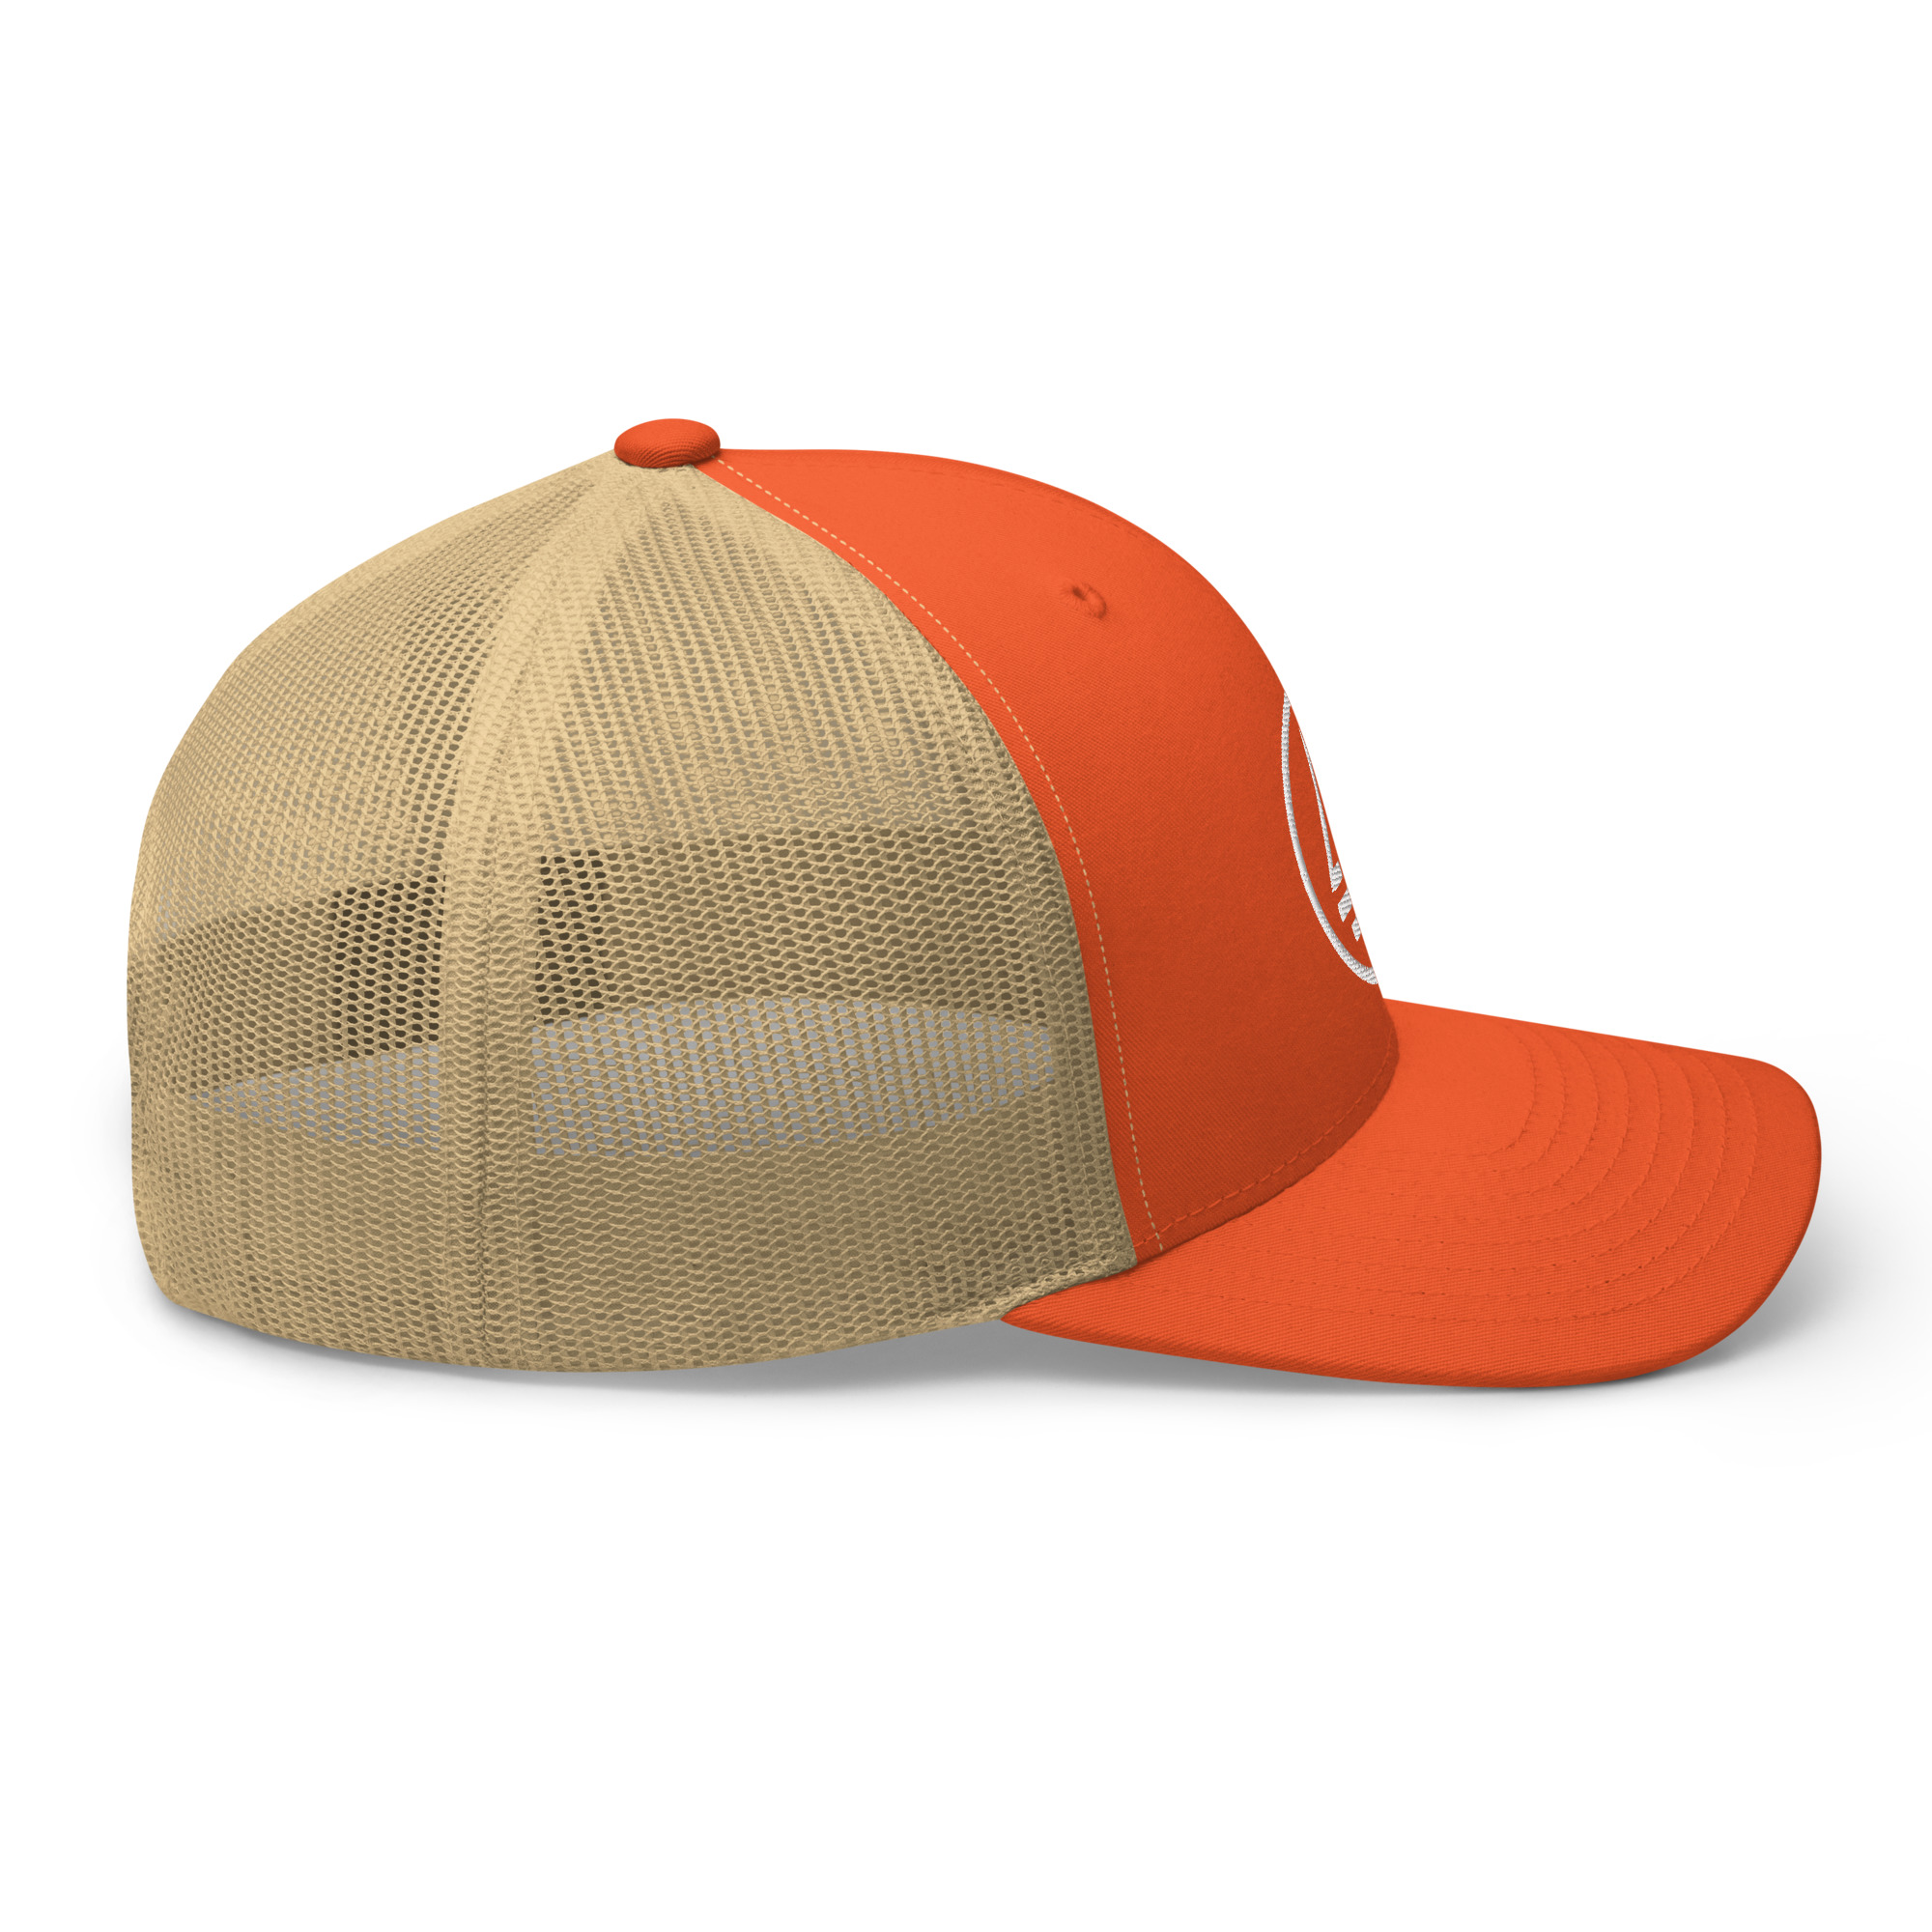 retro-trucker-hat-rustic-orange-khaki-right-64ca3d3104def.jpg